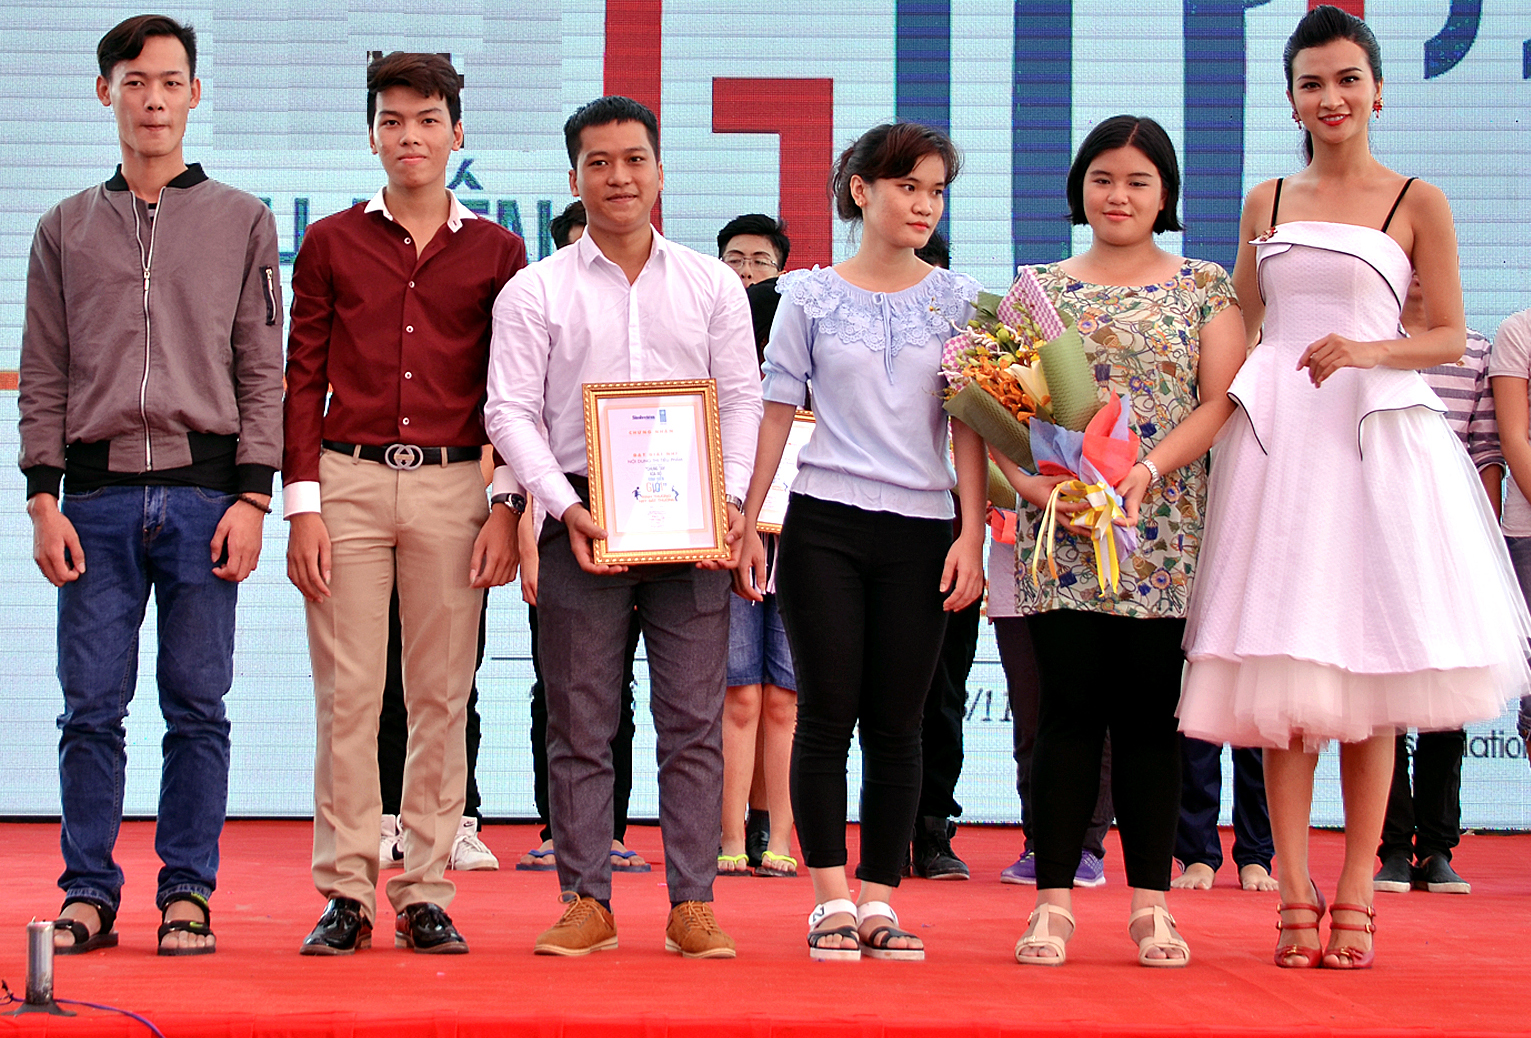 CLB Diễn xuất HUTECH giành giải nhì tại Hội thi do Báo Sinh viên VN tổ chức 56